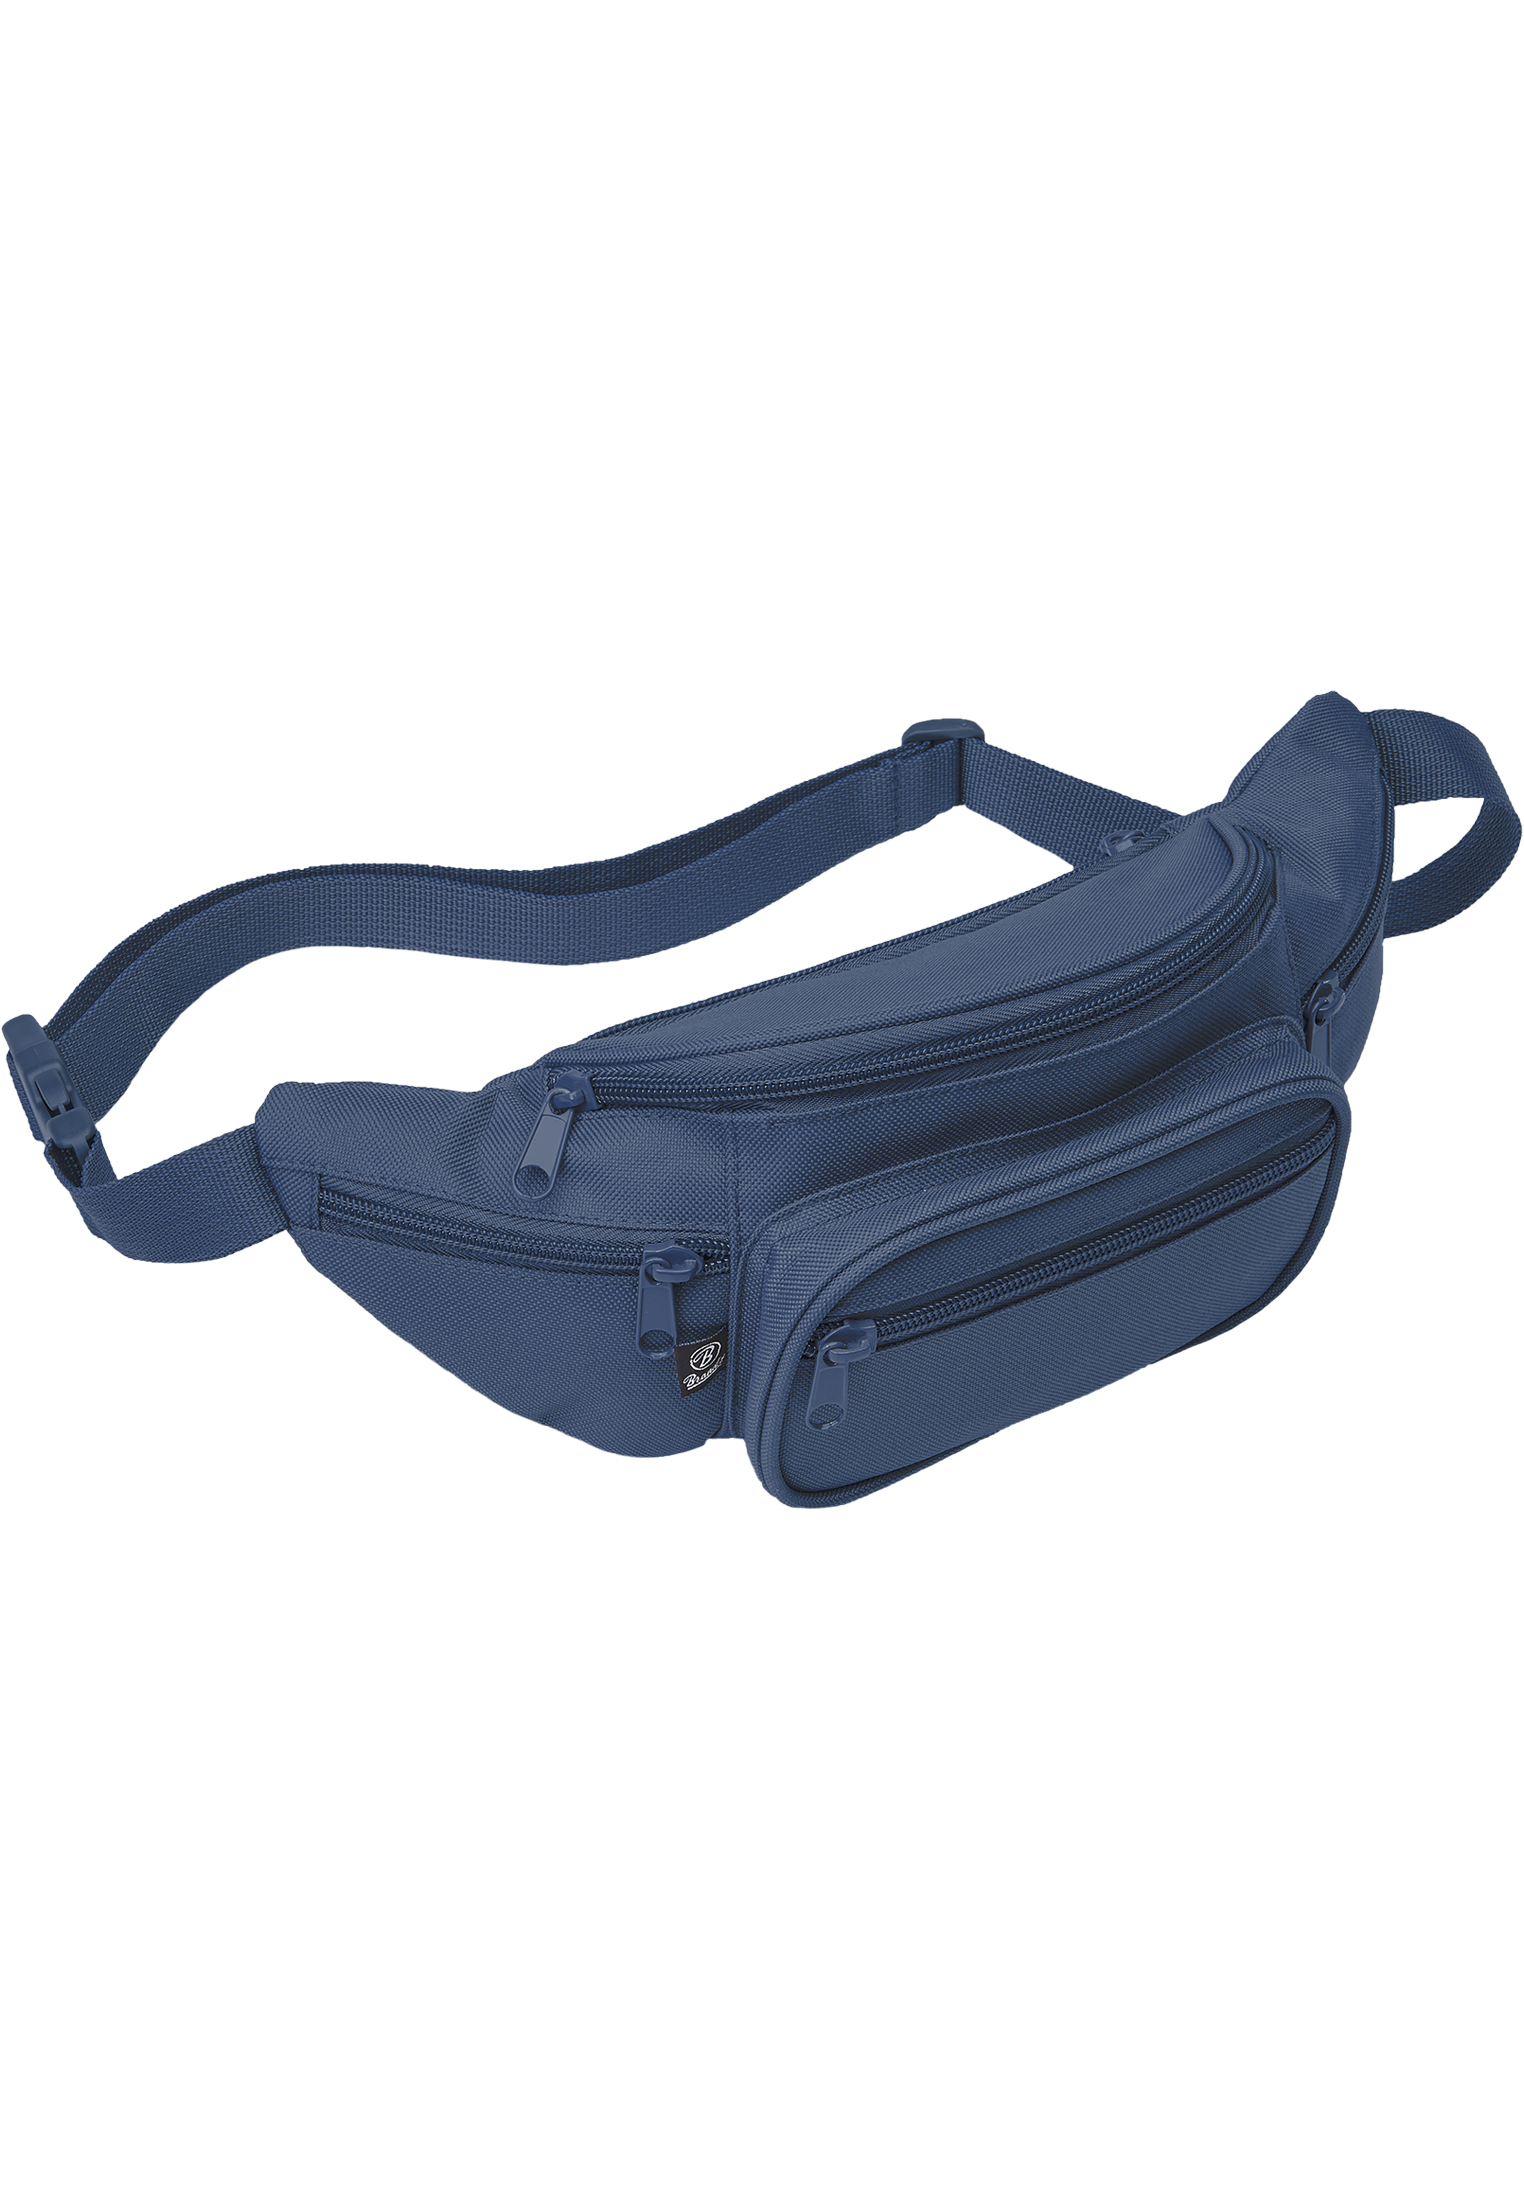 Taschen Pocket Hip Bag in Farbe navy